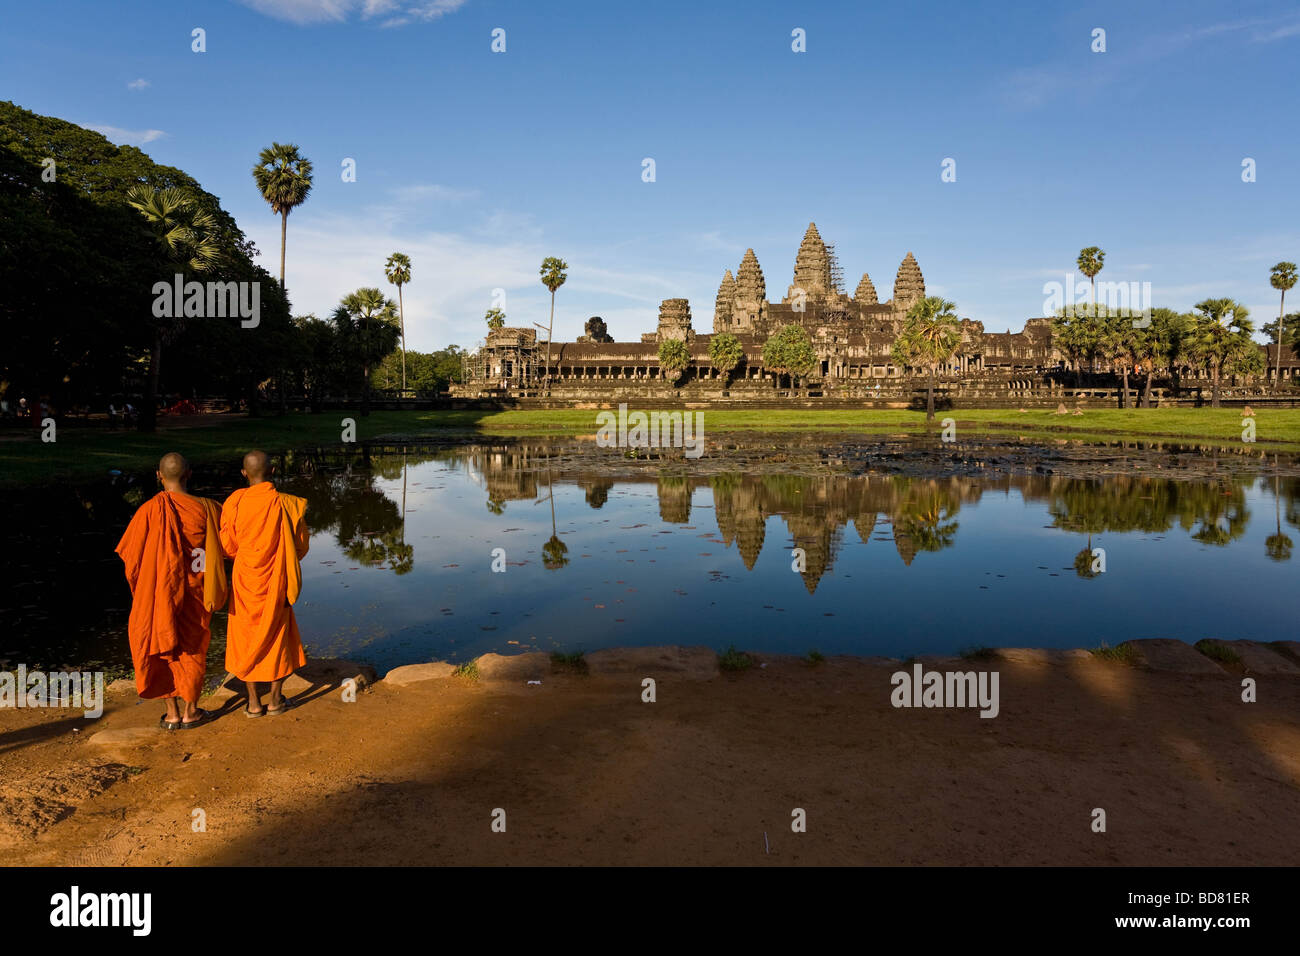 L'affichage classique d'Angkor Wat dans les piscines avec une réflexion claire, avec deux moines robe orange à l'avant-plan Banque D'Images